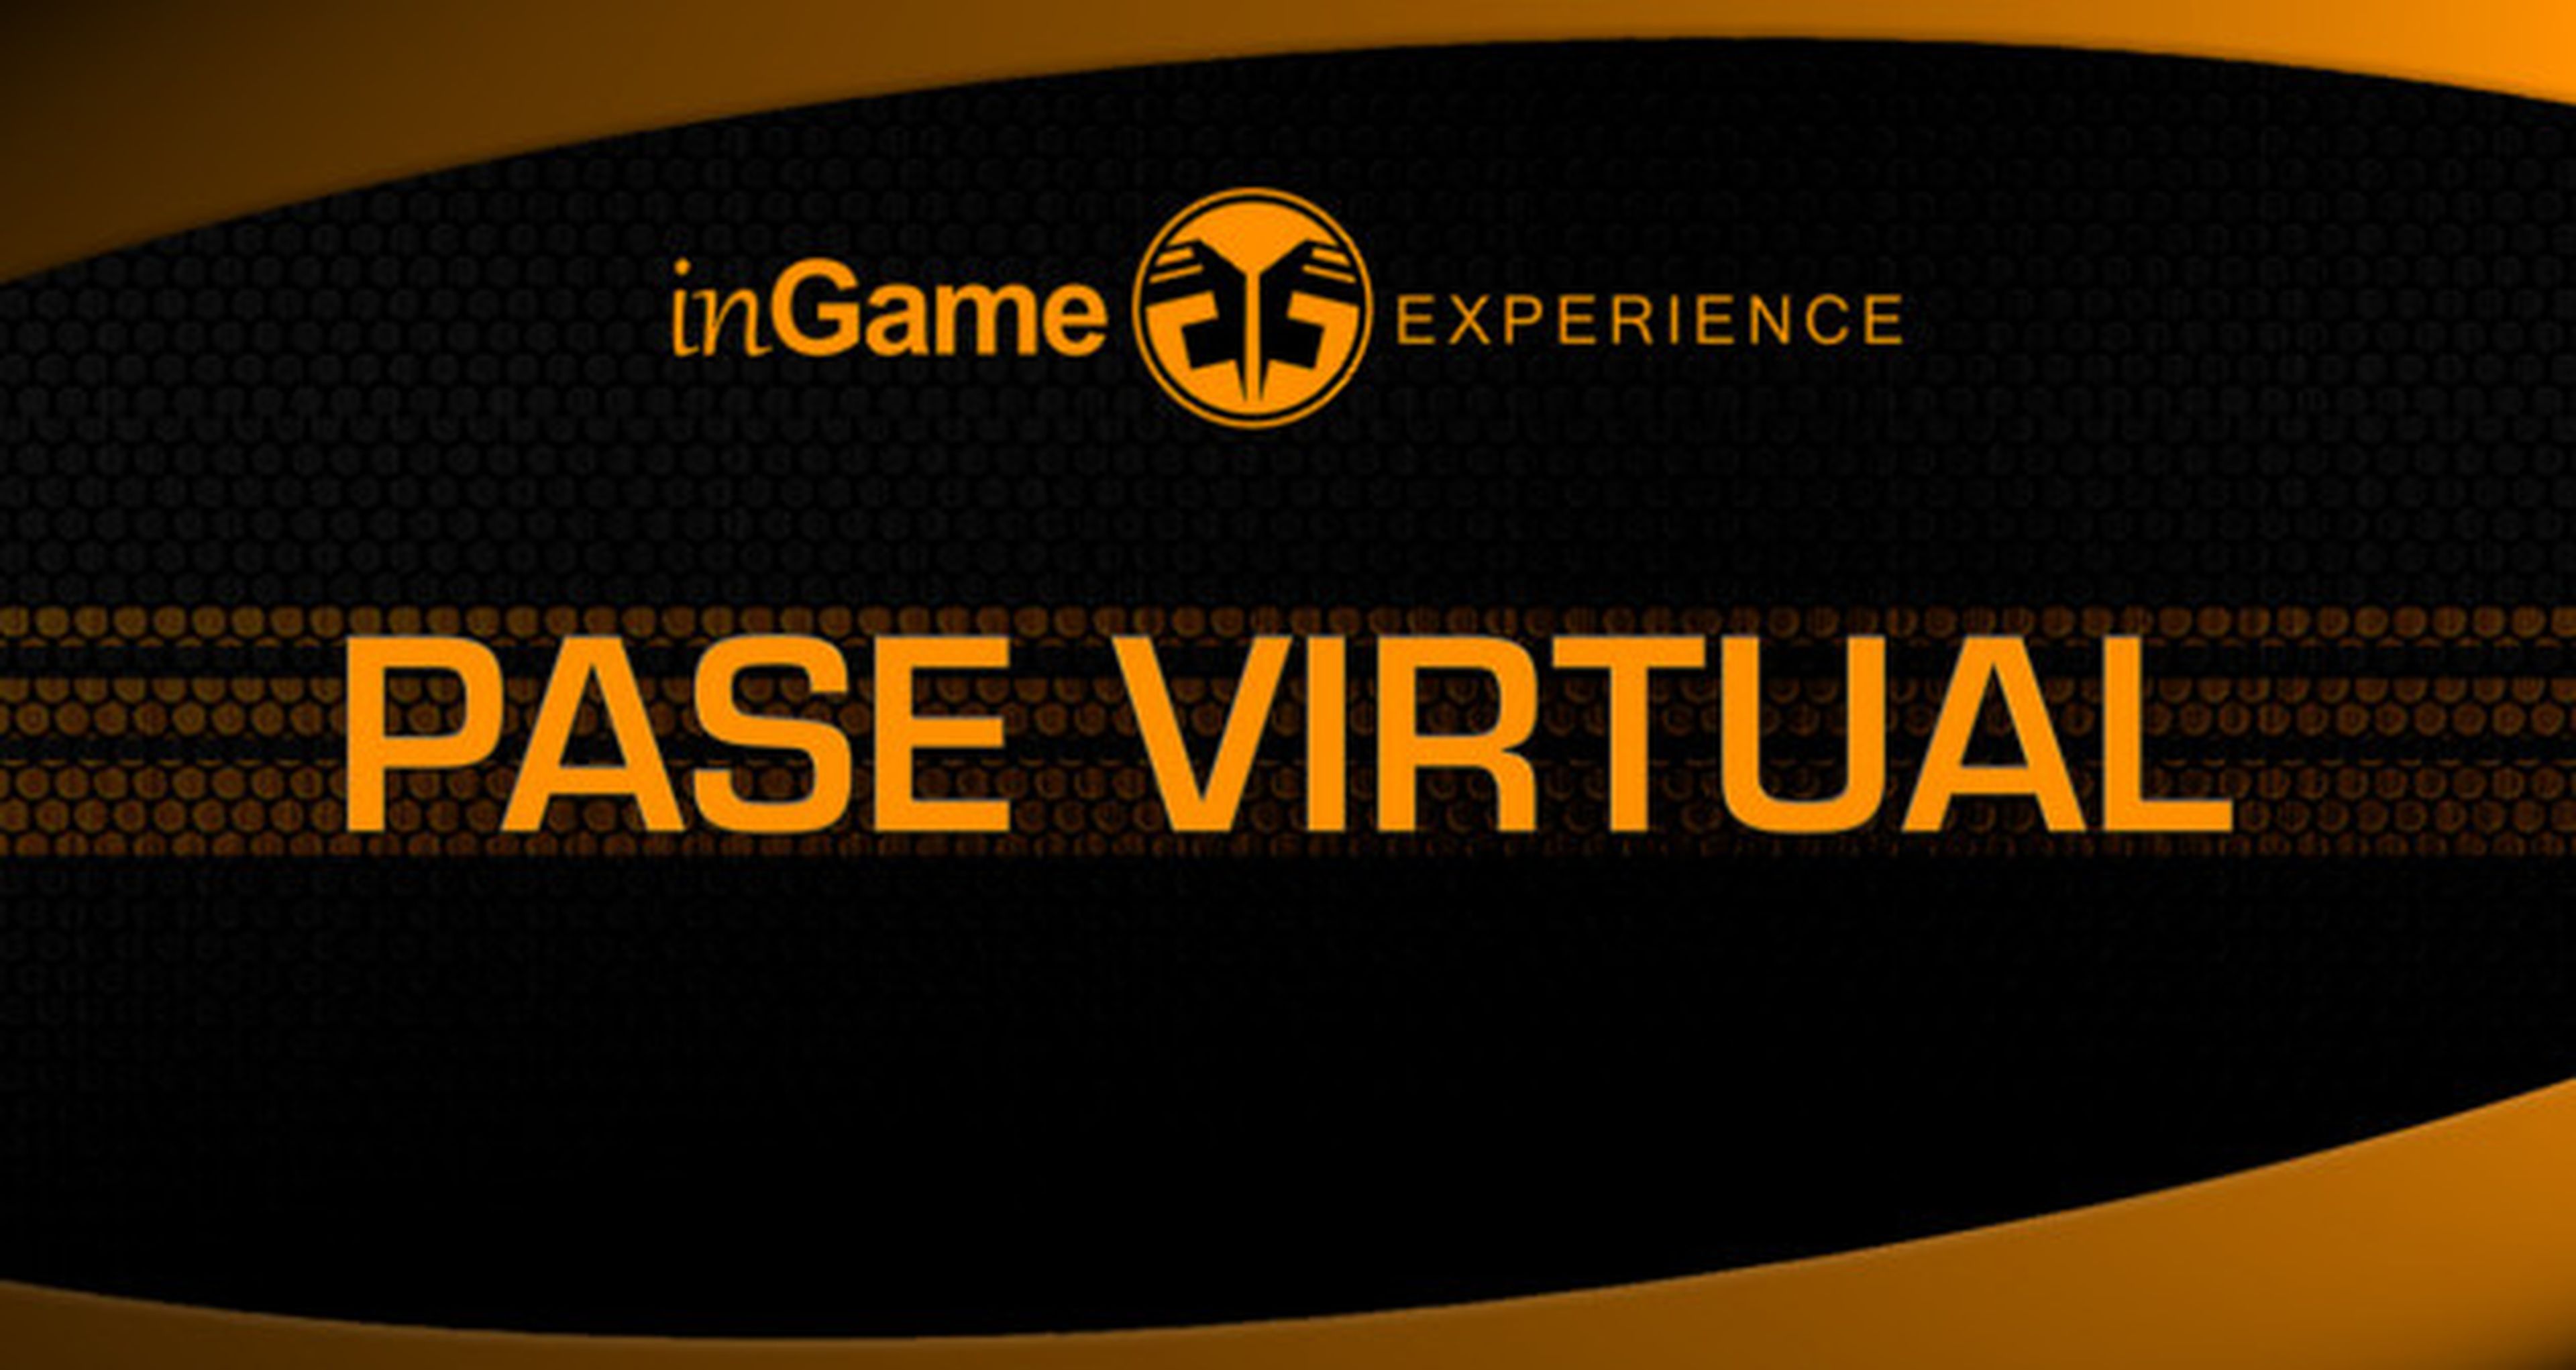 Disfruta de la inGame Experience a distancia con el Pase Virtual